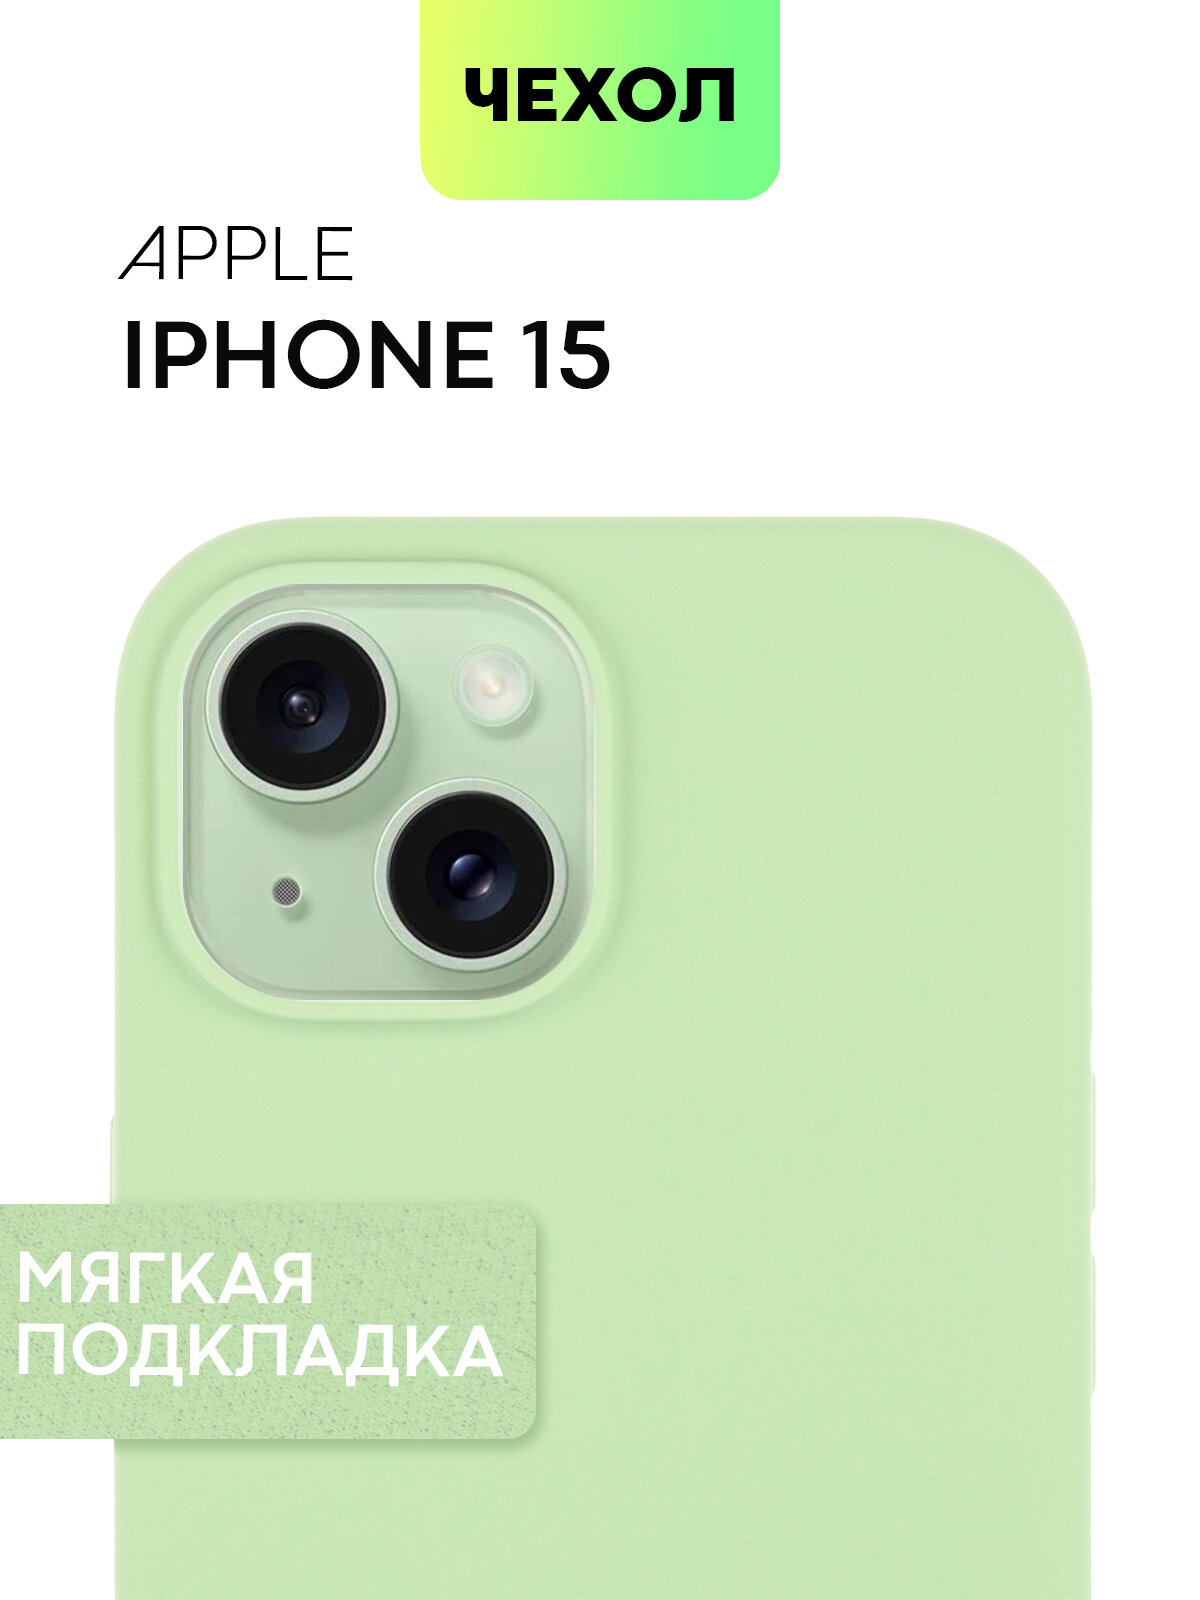 Прорезиненный чехол BROSCORP на Apple iPhone 15 (Эпл Айфон 15) с SOFT-TOUCH покрытием, микрофибра (мягкая подкладка), матовый, зеленый